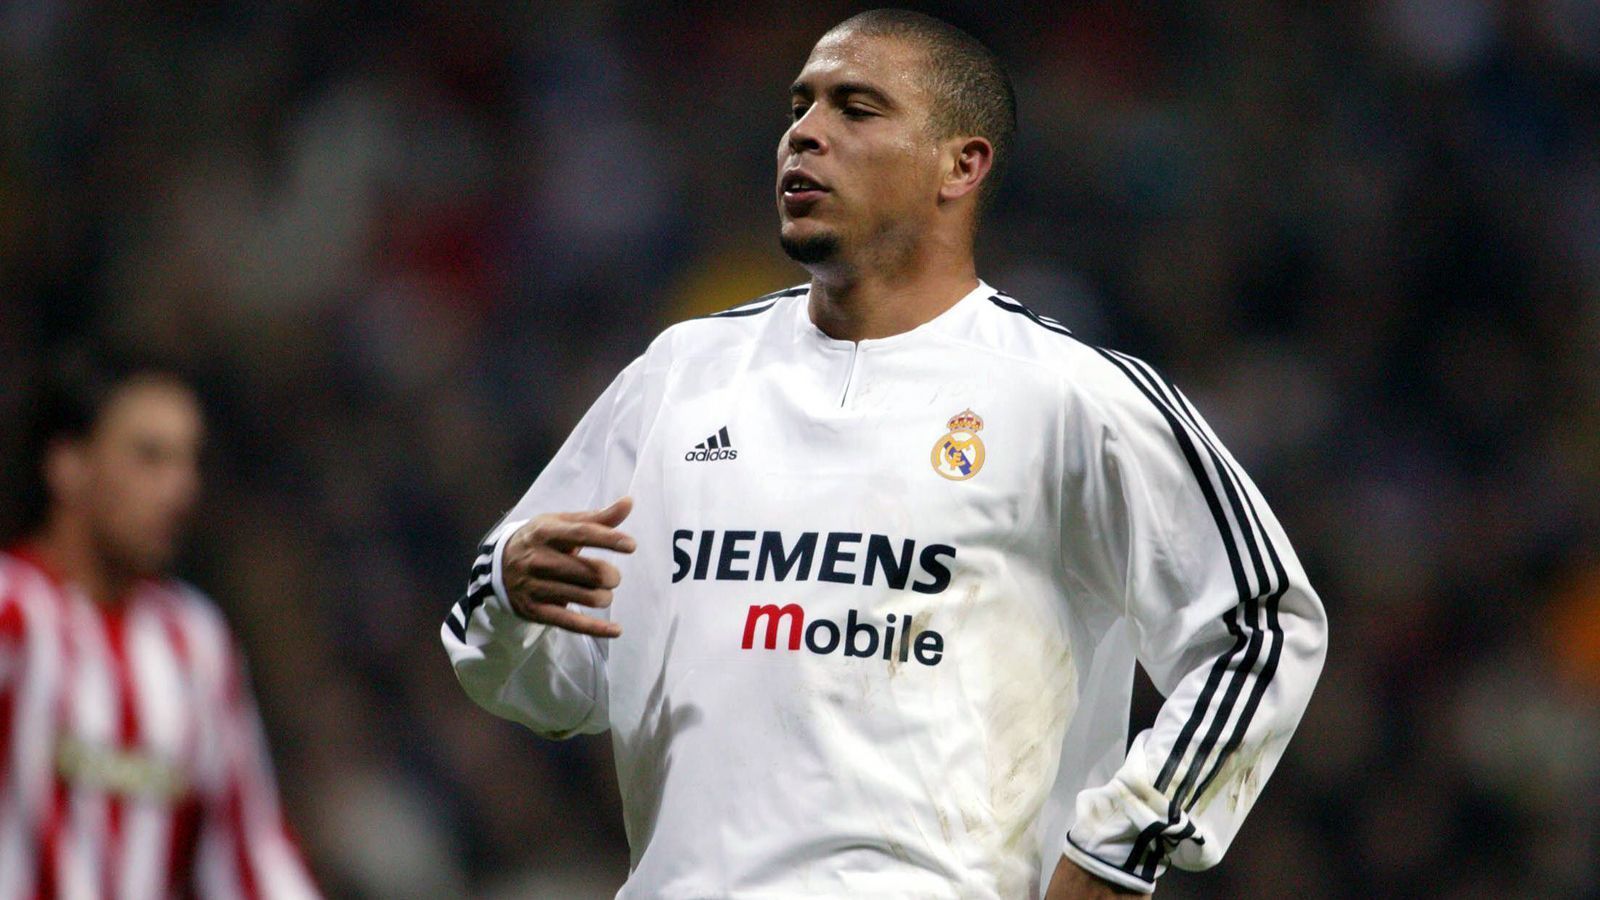 
                <strong>Ronaldo (Real Madrid)</strong><br>
                Traf in drei Spielen in Folge nach dem Saisonbeginn 2003/04 (Anmerkung: Ronaldo verpasste den 2. Spieltag und setzte seine Torserie am 3. Spieltag fort)
              